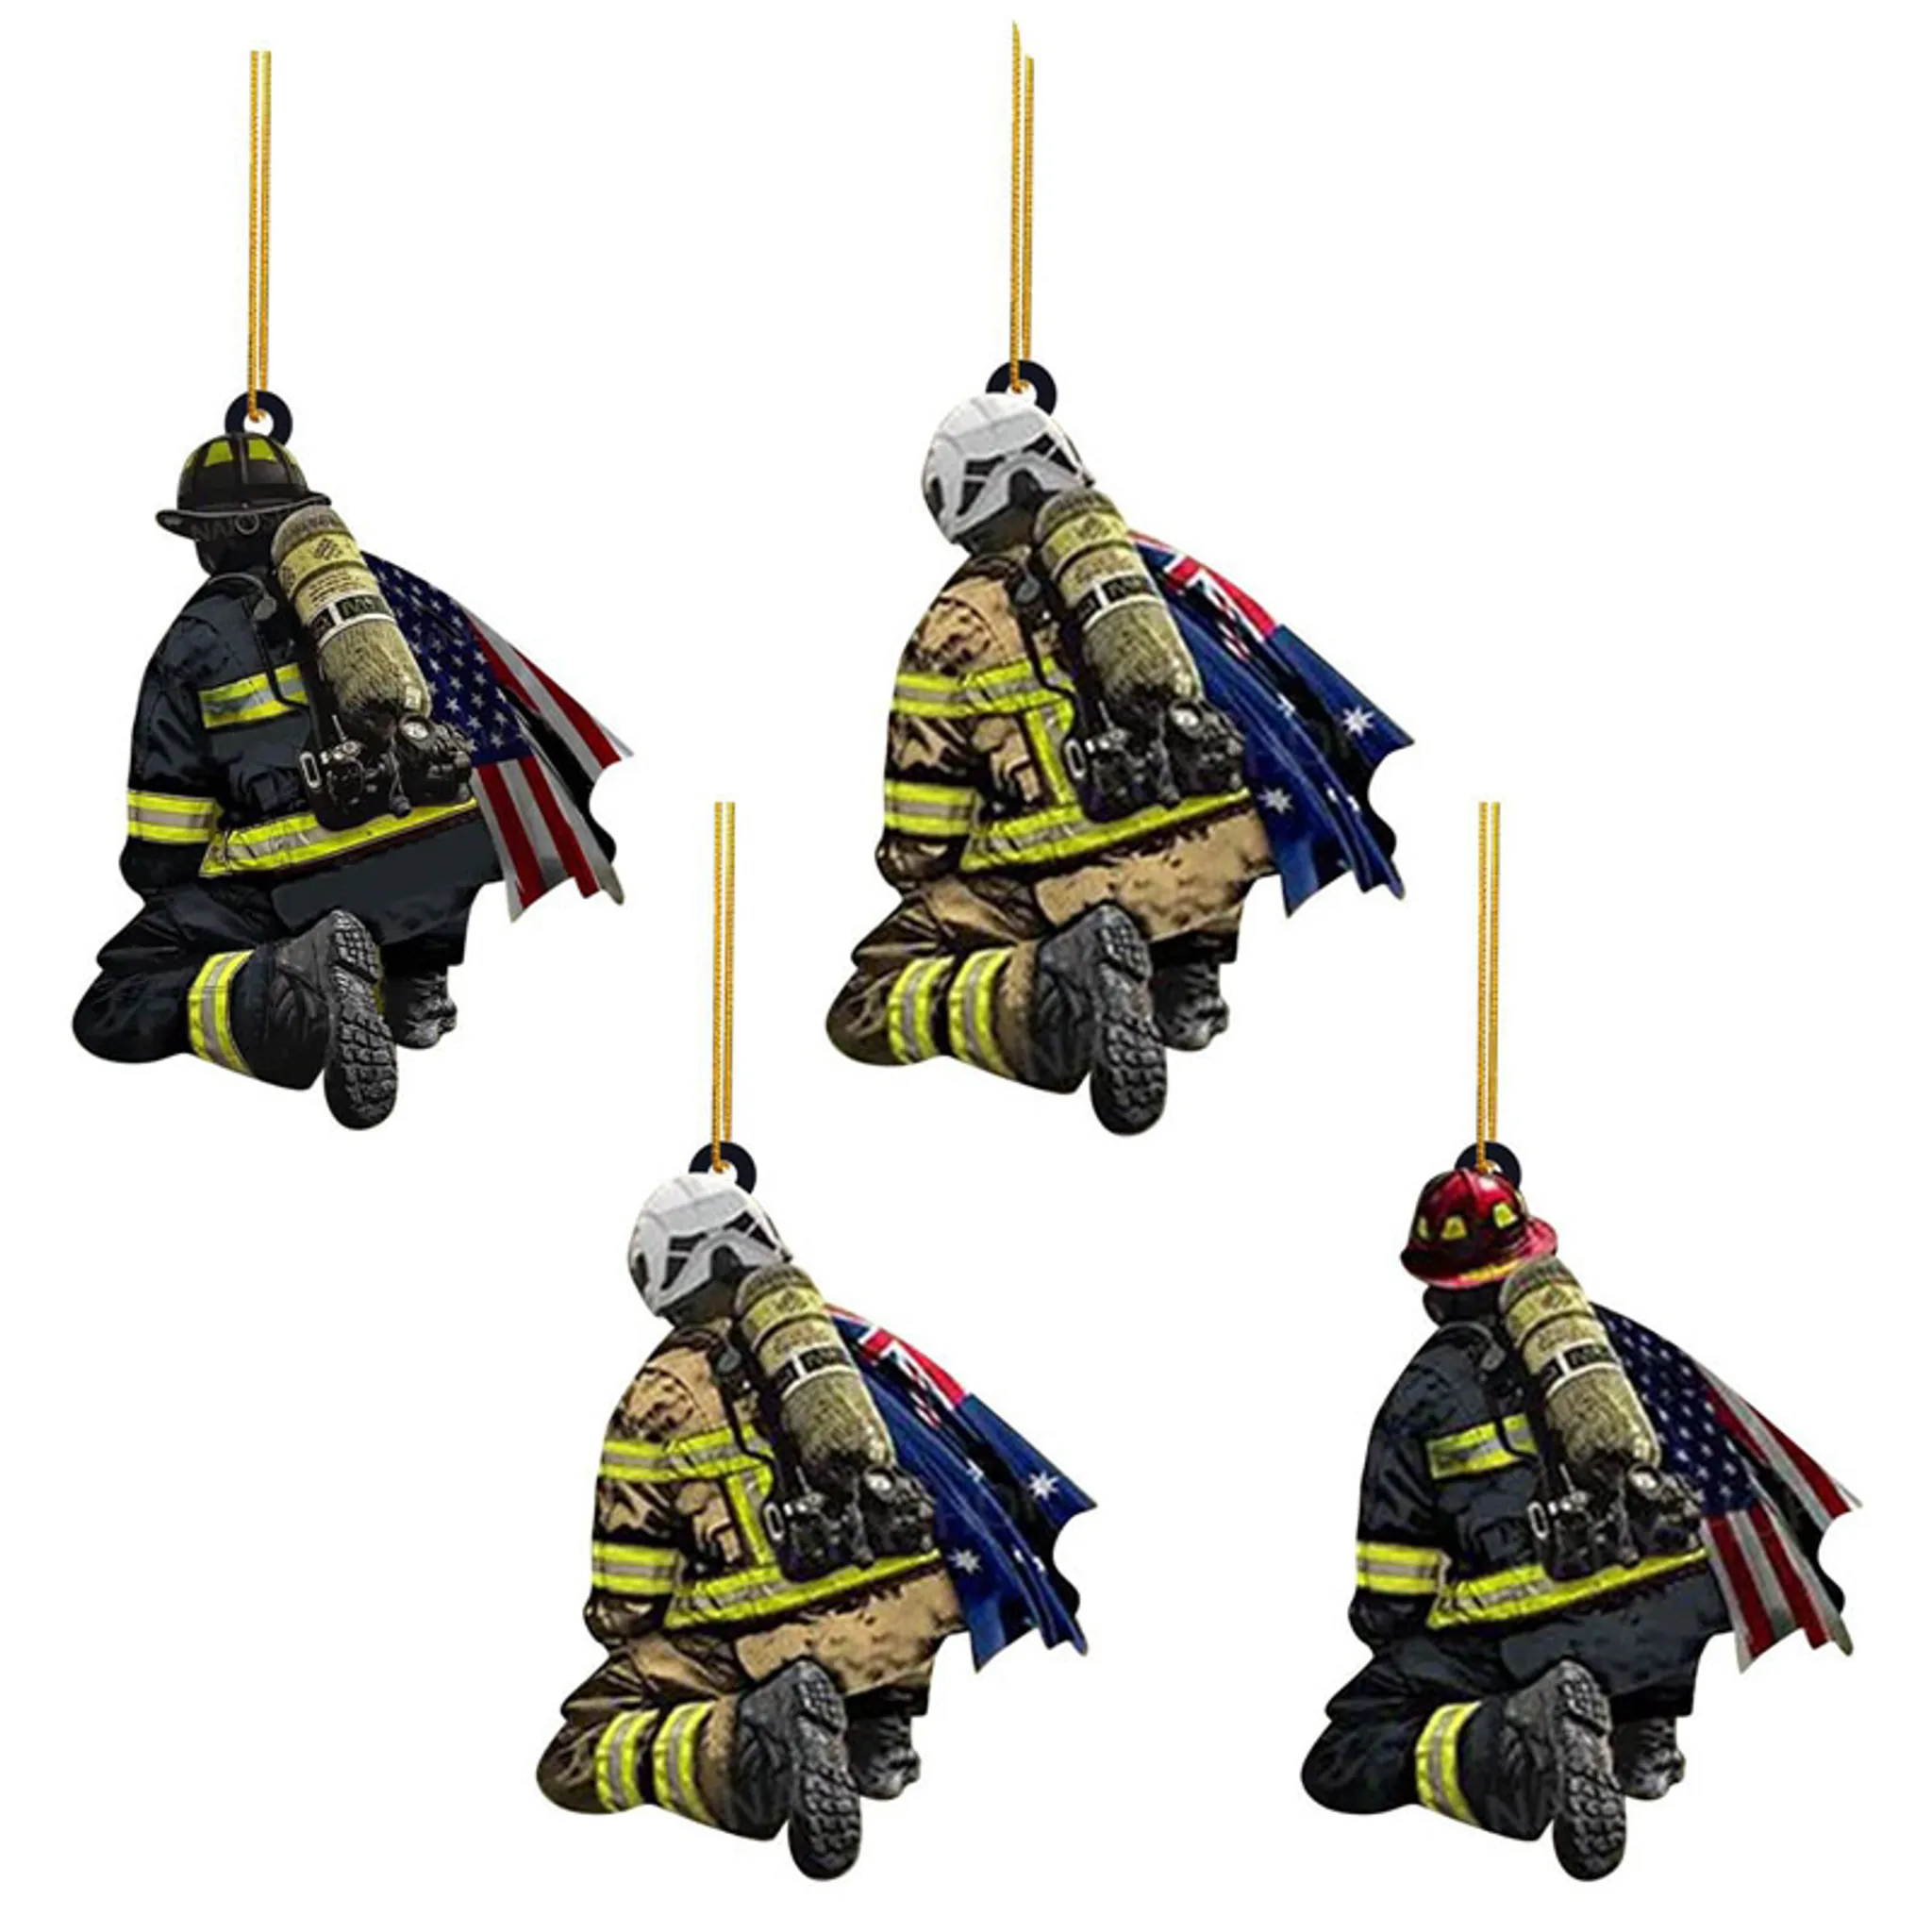 Feuerwehrmann Weihnachtsdekorationen, 4 x